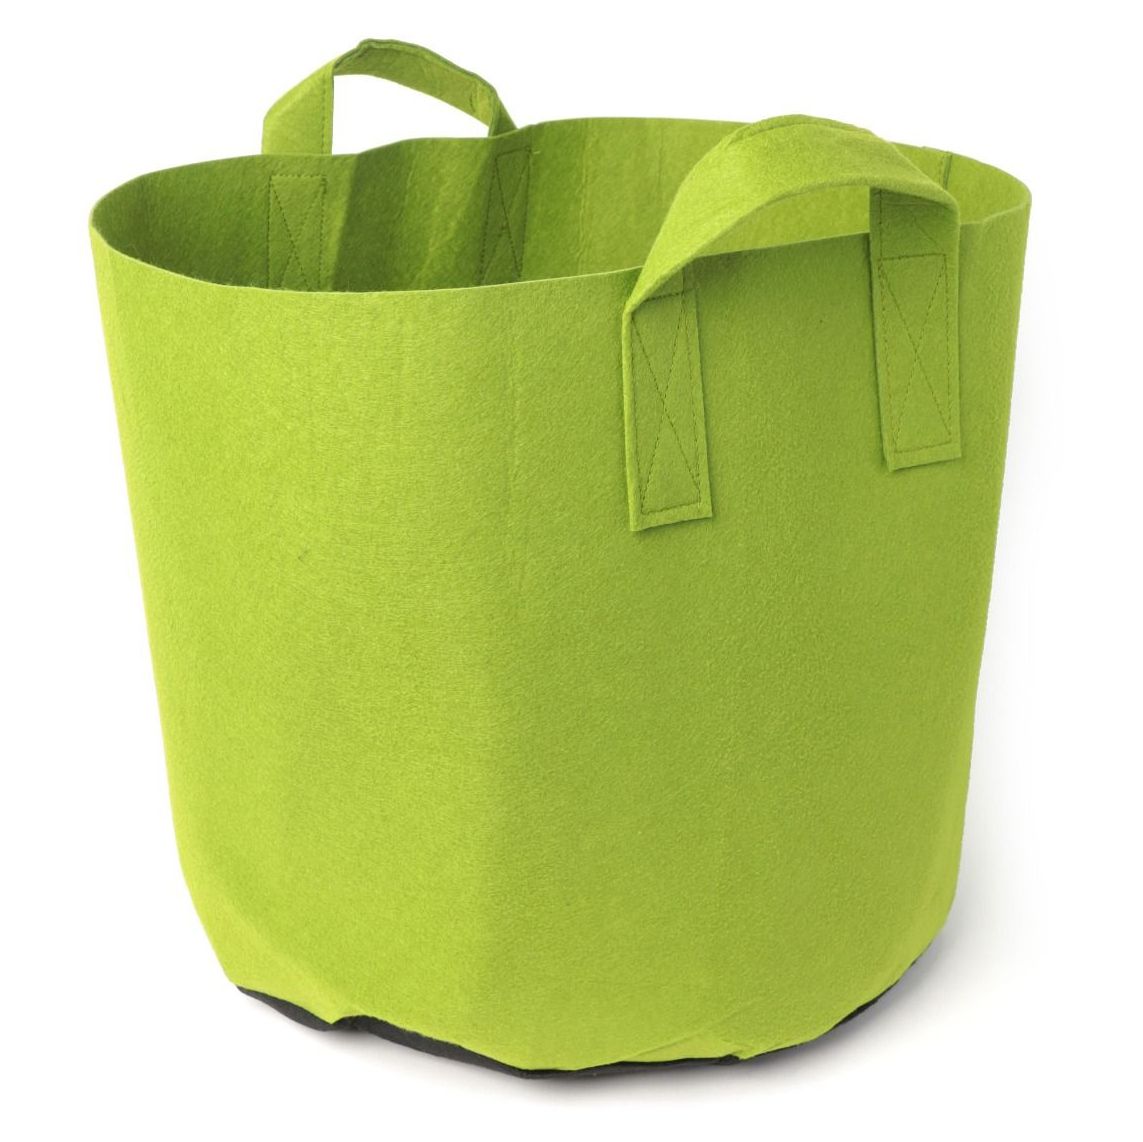 247Garden 15-Gallon Green Aeration Fabric Pot/Plant Grow Bag w